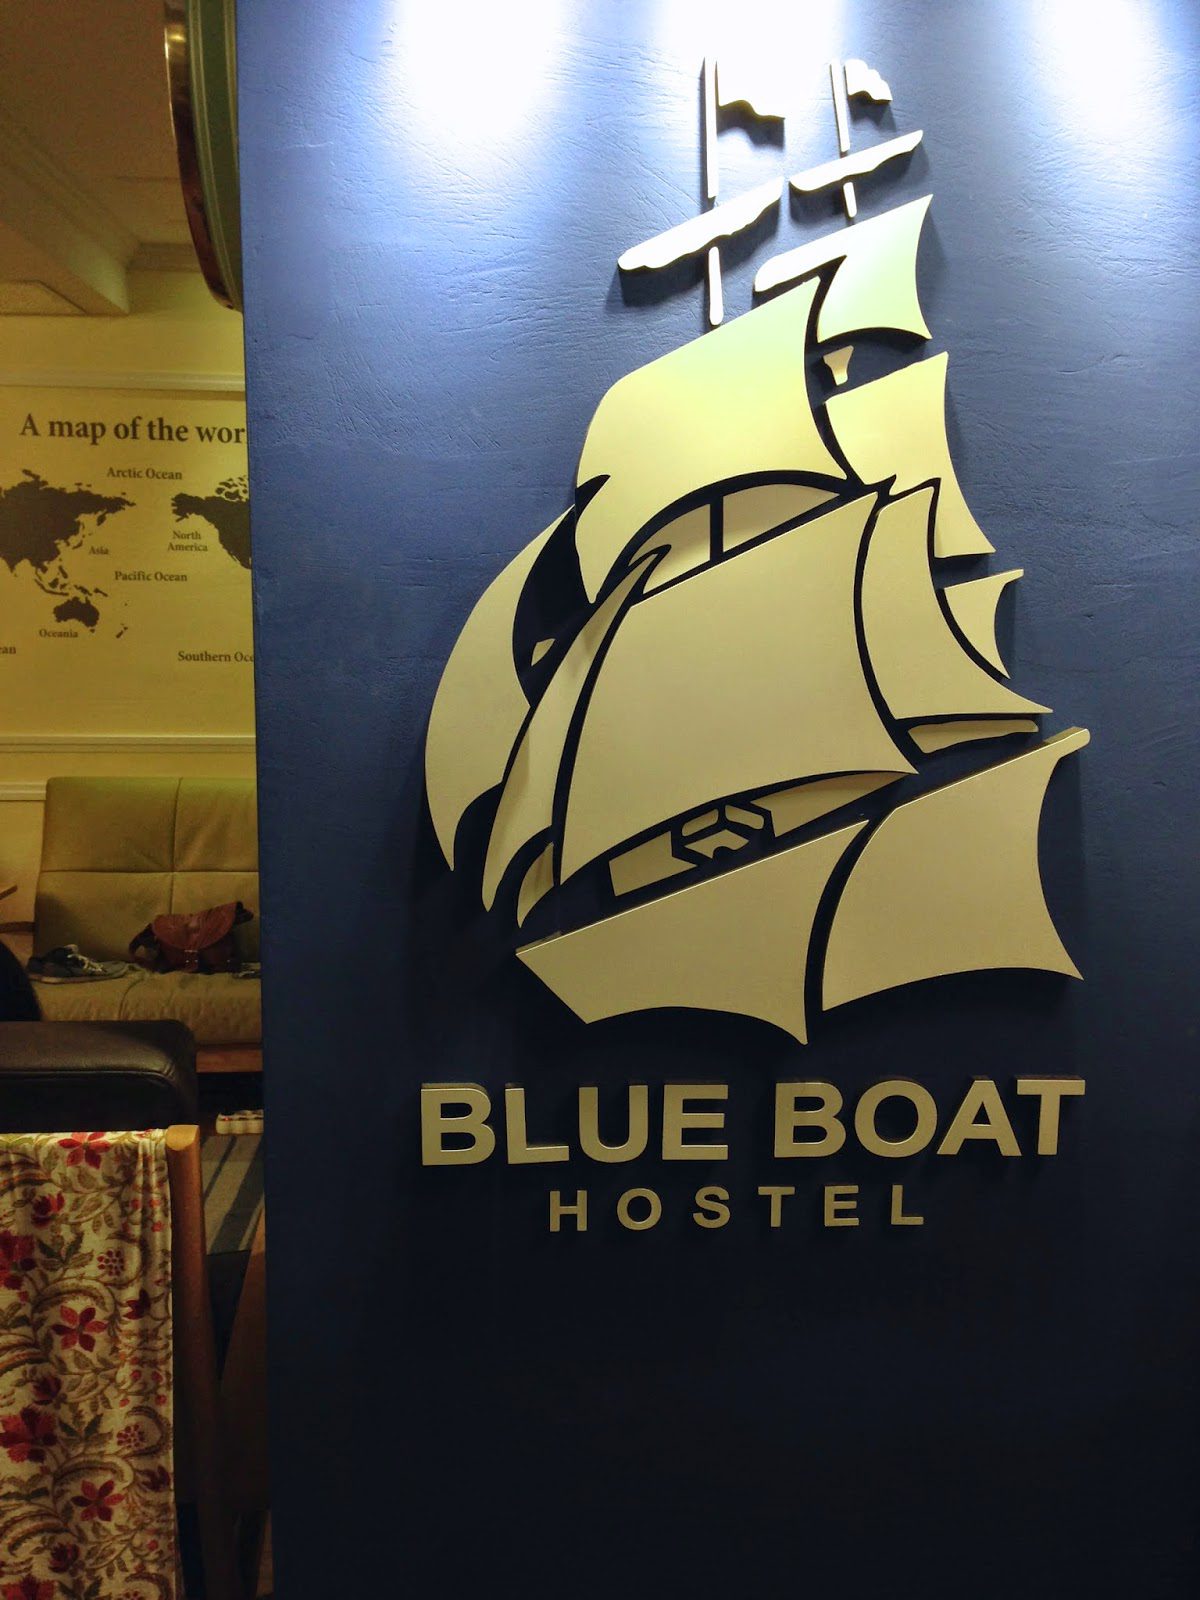 Blue Boat Hostel